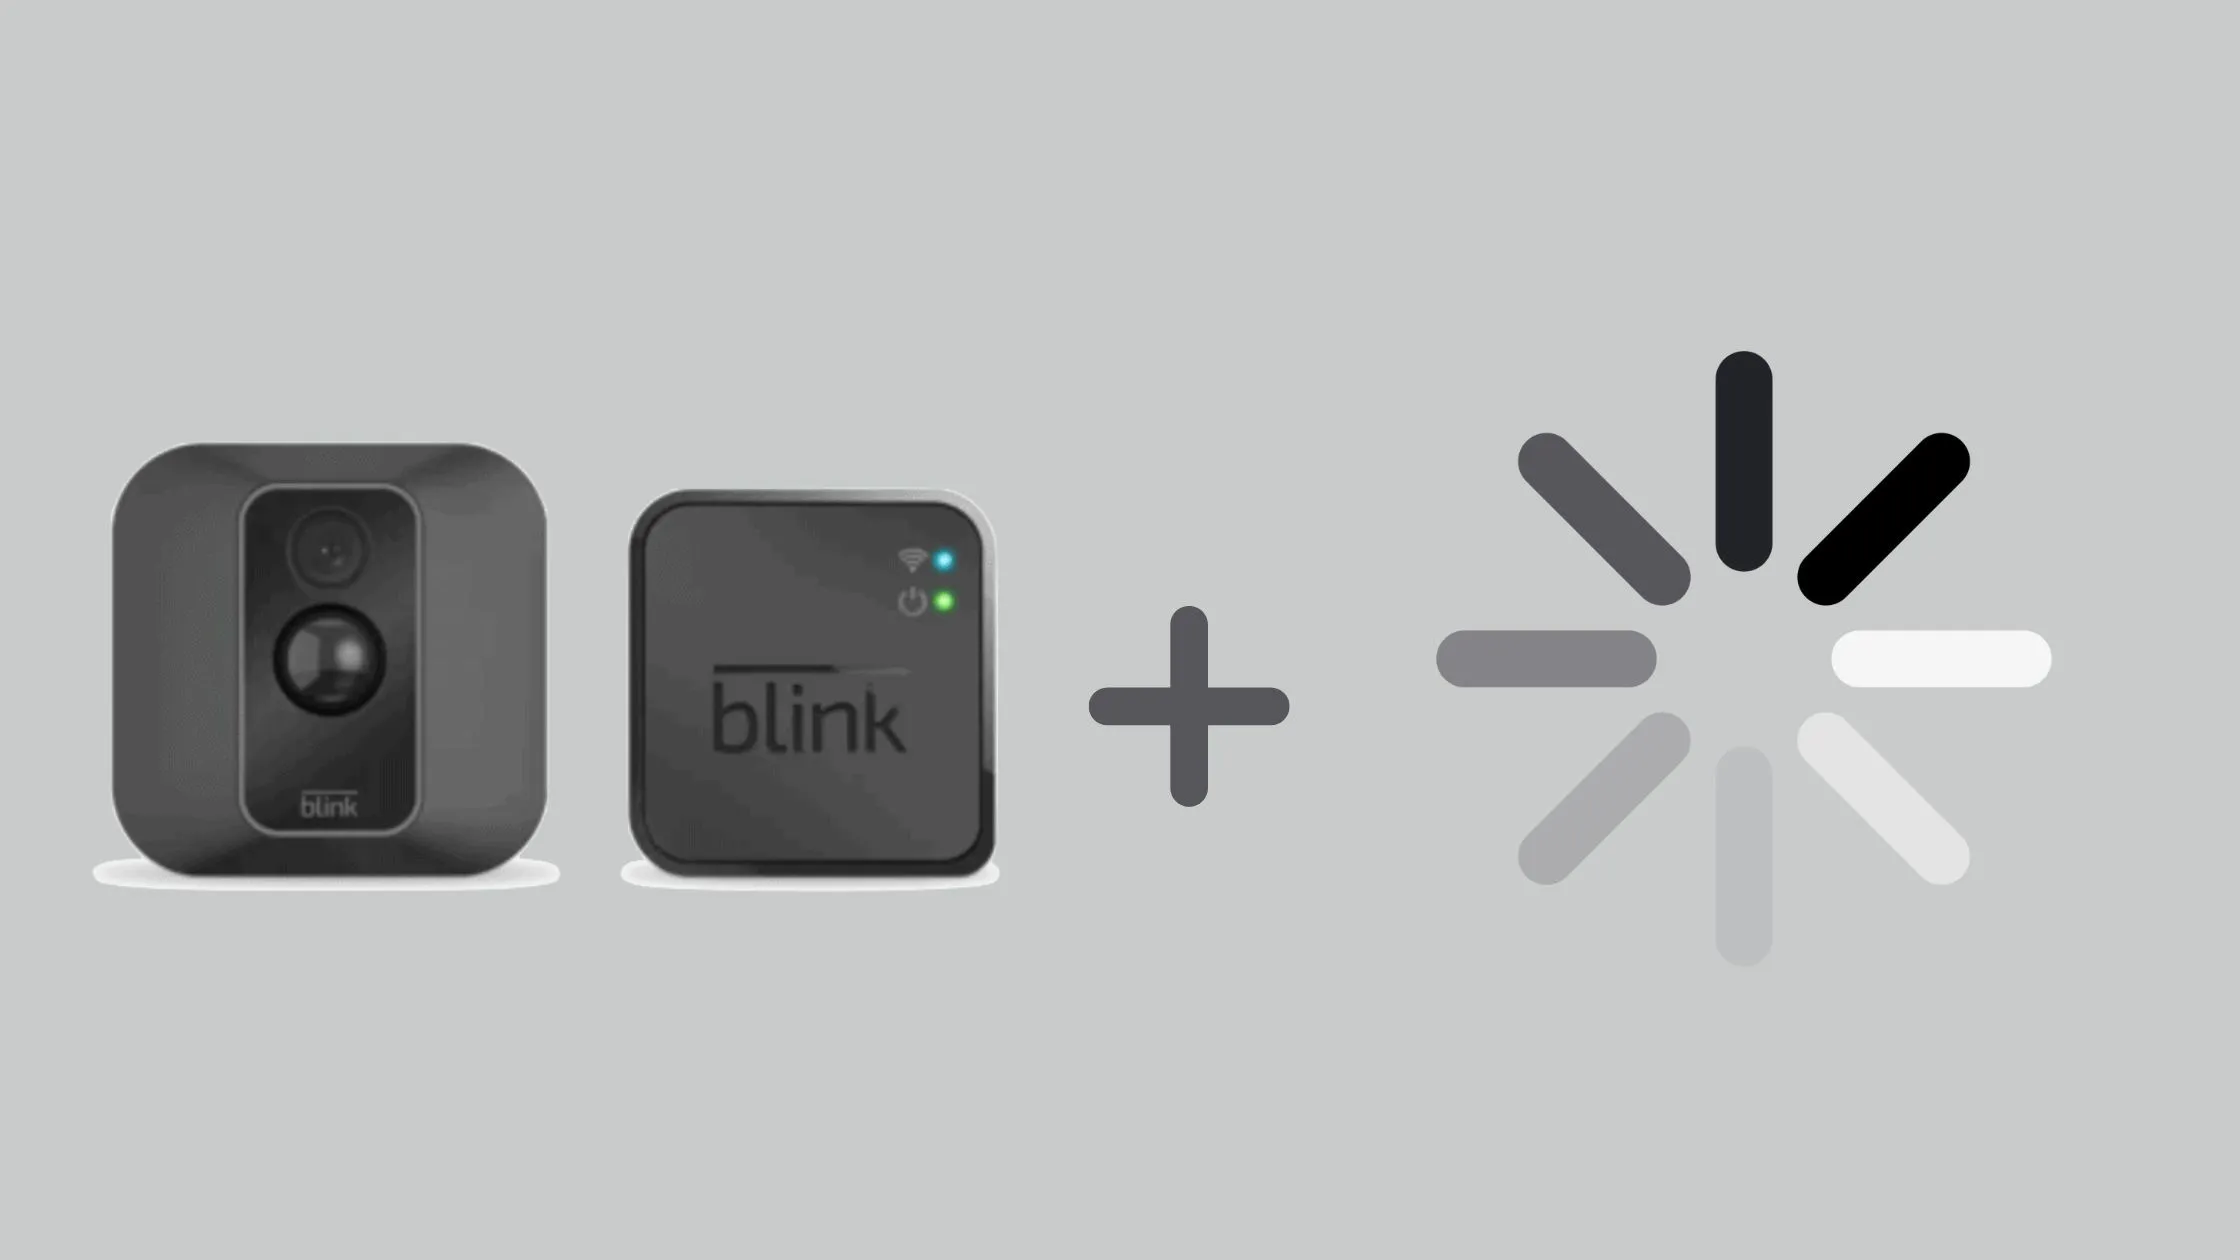 Understanding the buffering in blink cameras